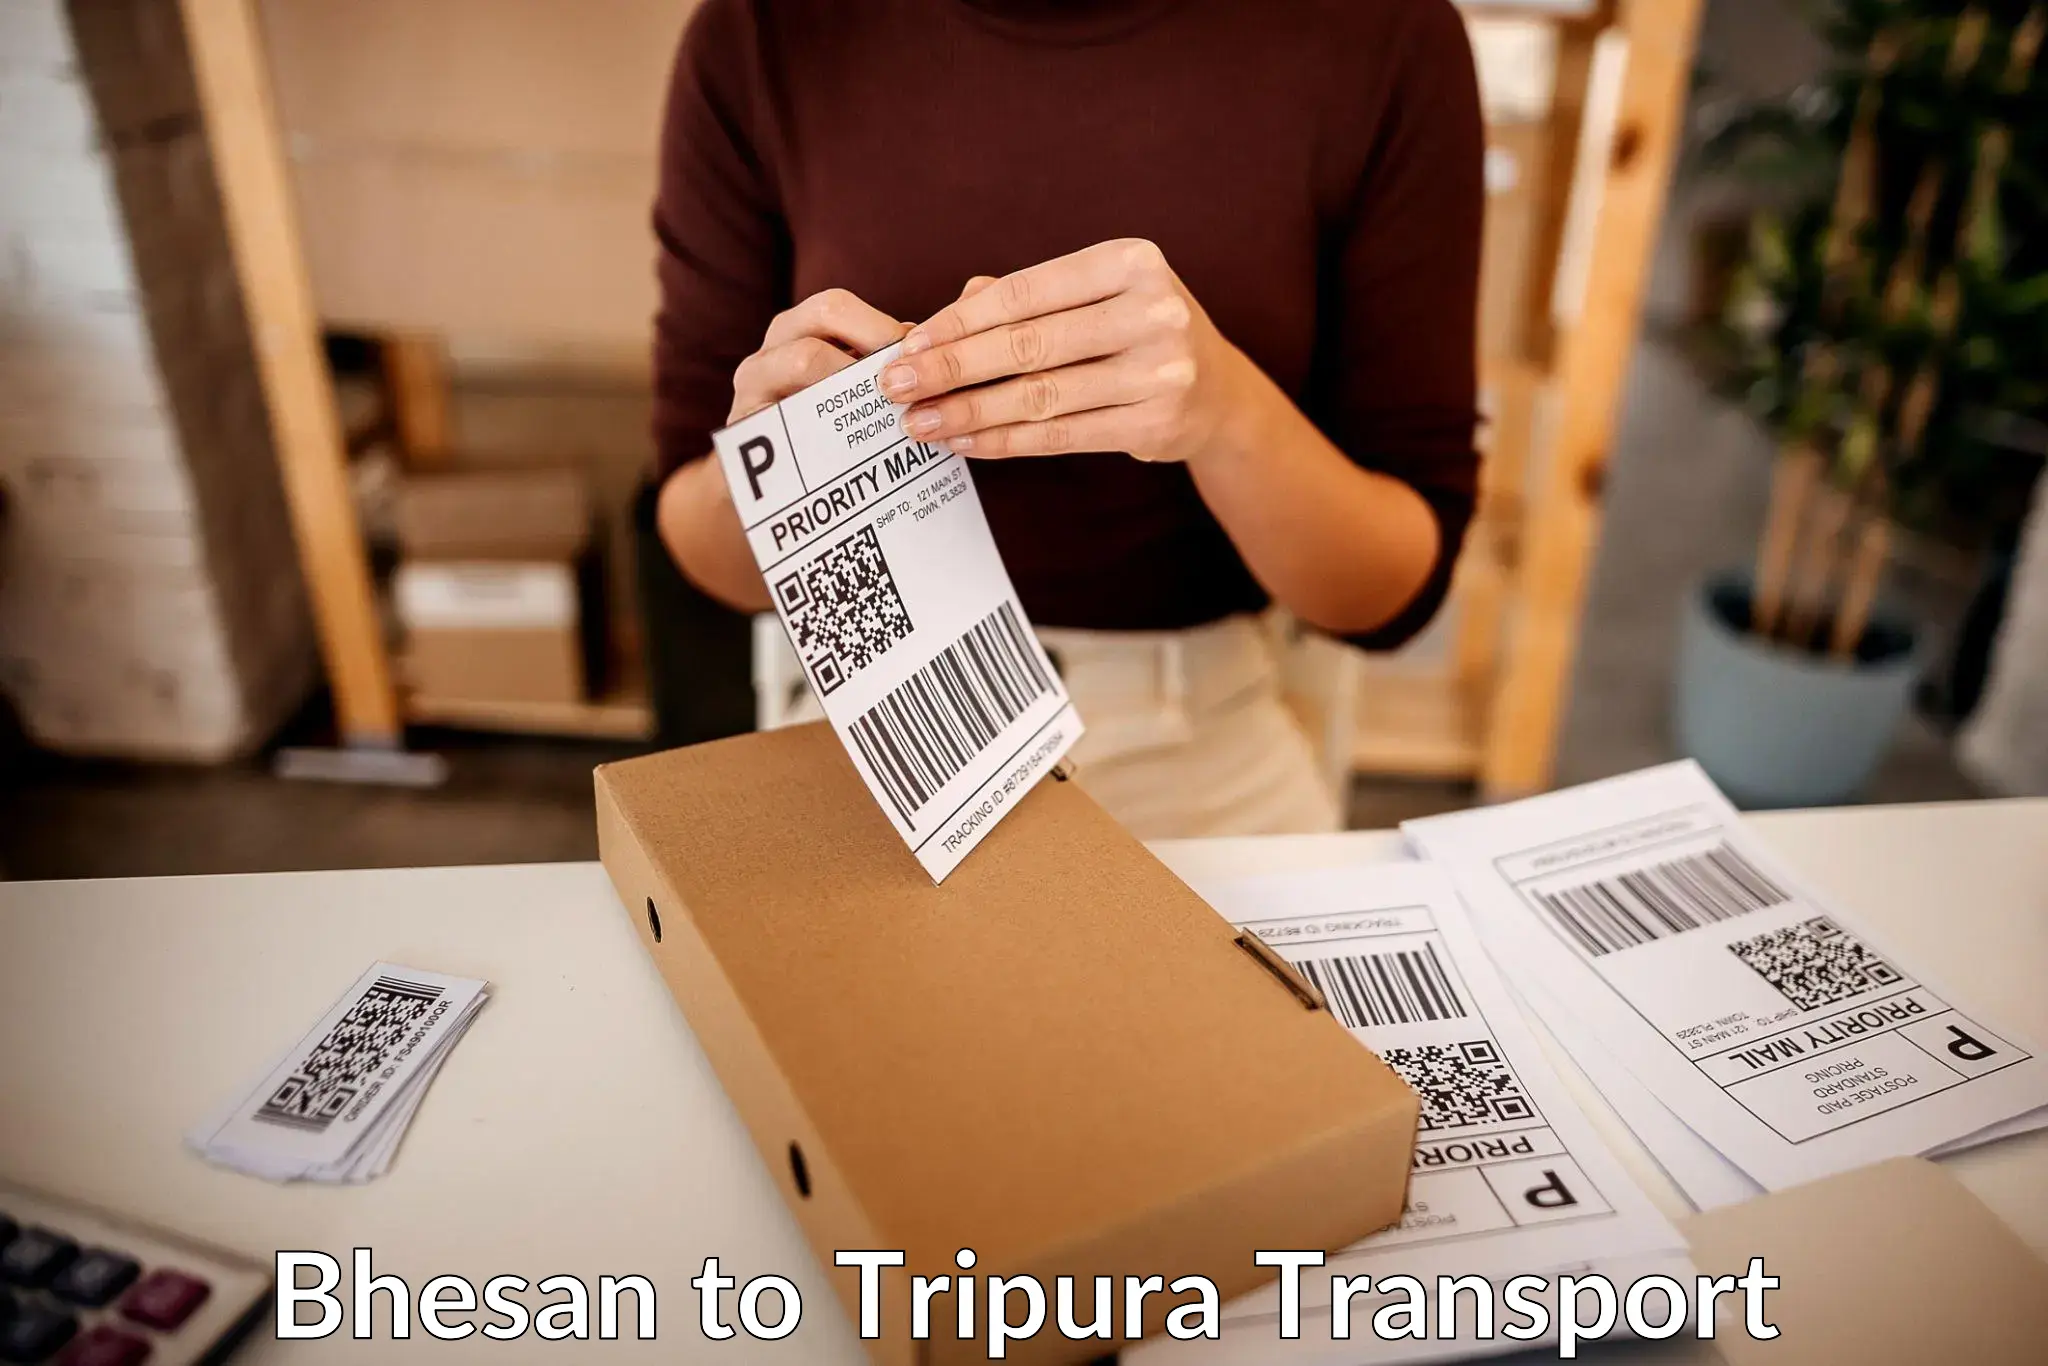 Furniture transport service Bhesan to Udaipur Tripura